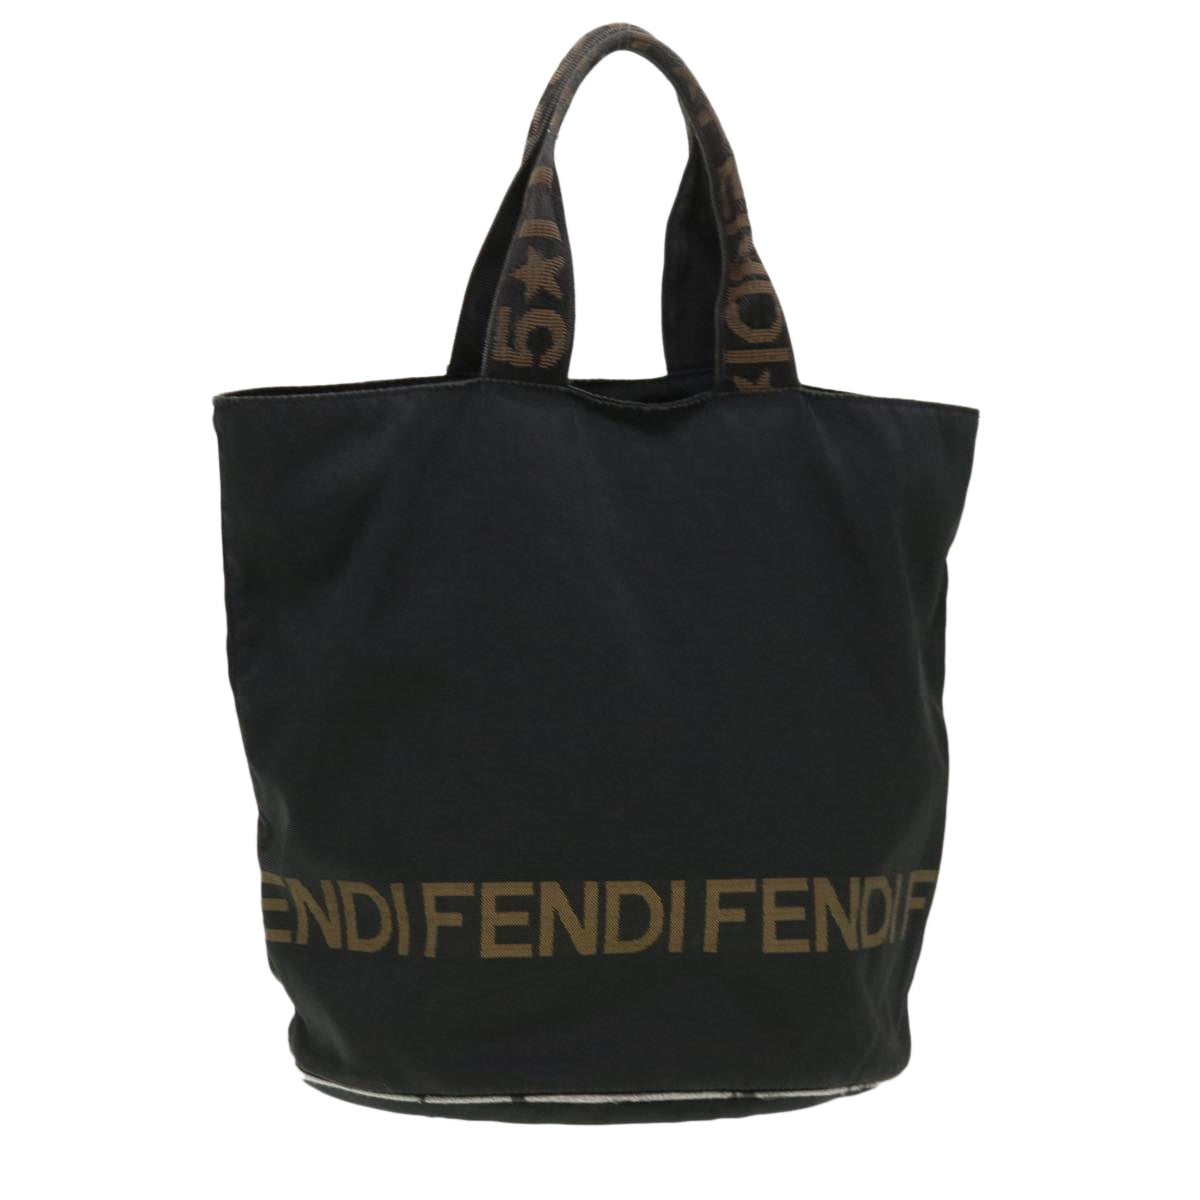 FENDI Hand Bag Nylon Brown Black Auth yb047